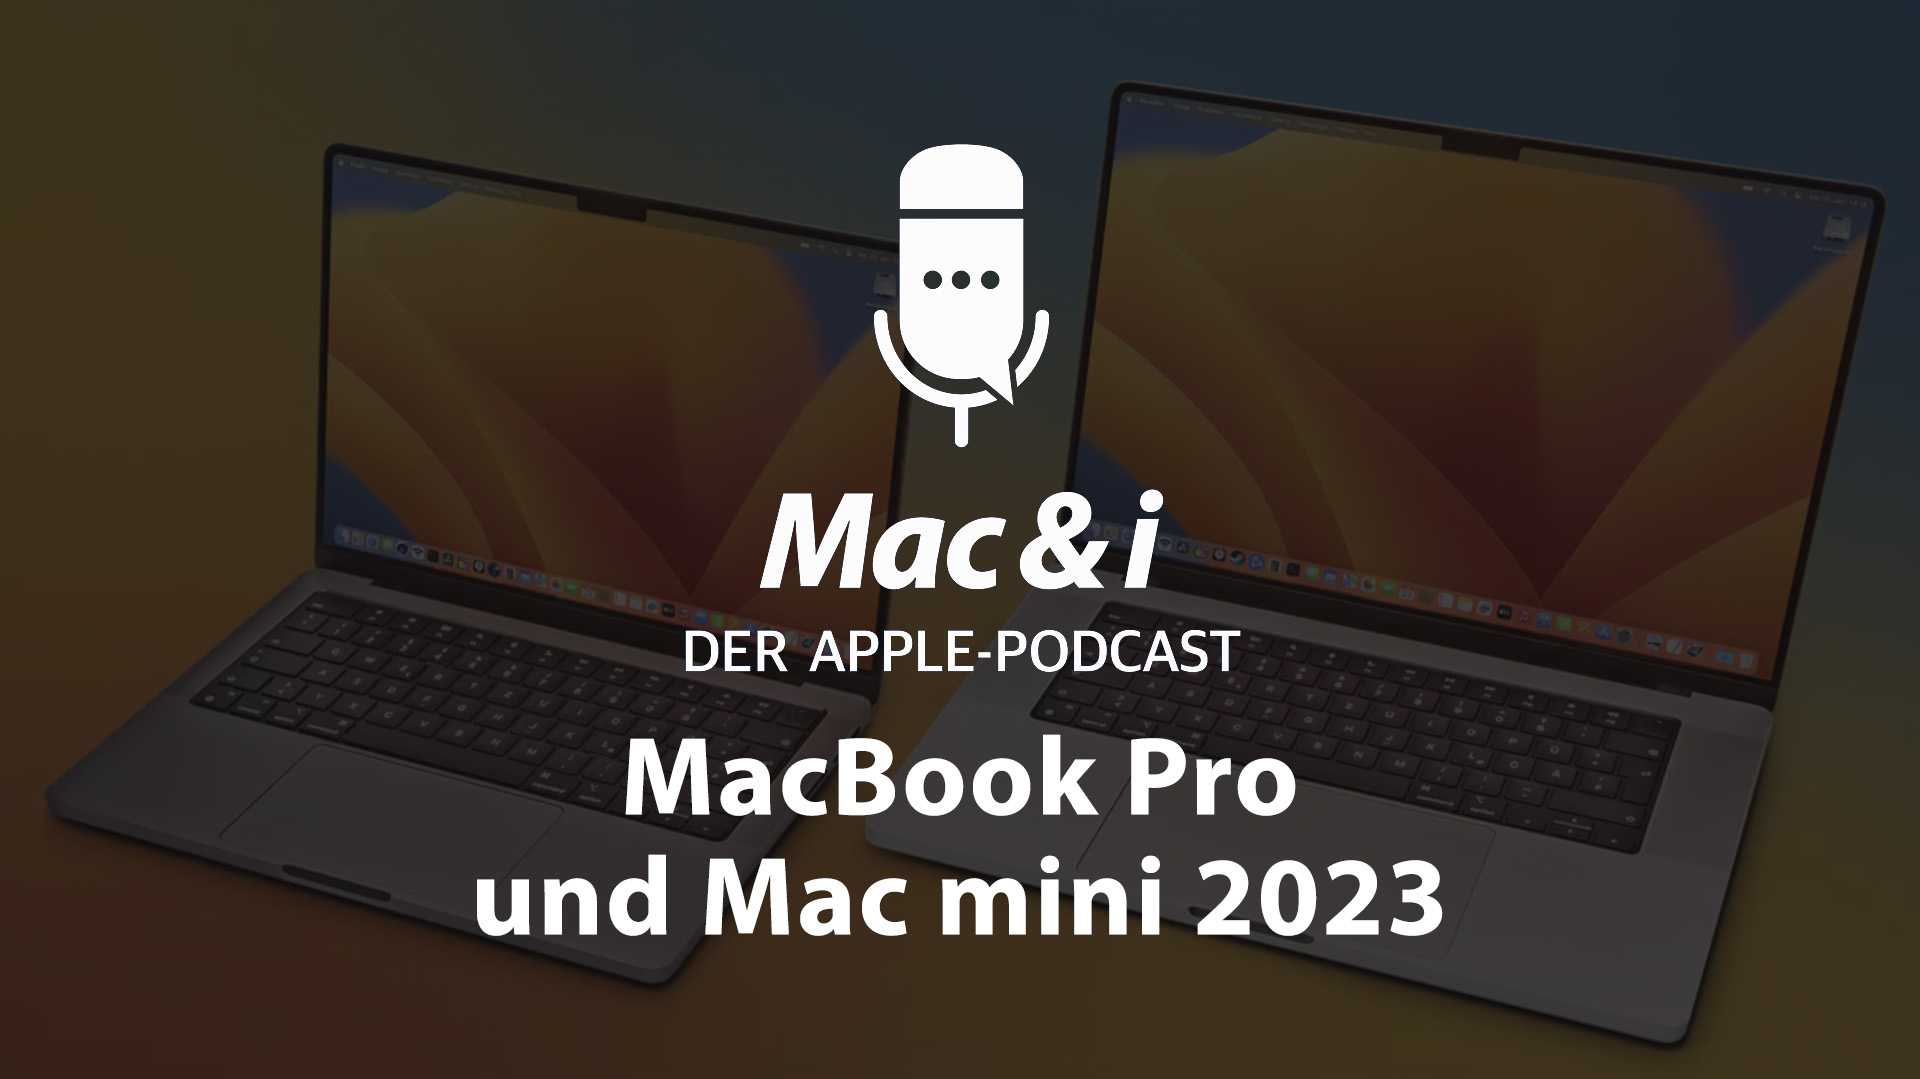 Mac & i Podcast – MacBook Pro und Mac mini 2023